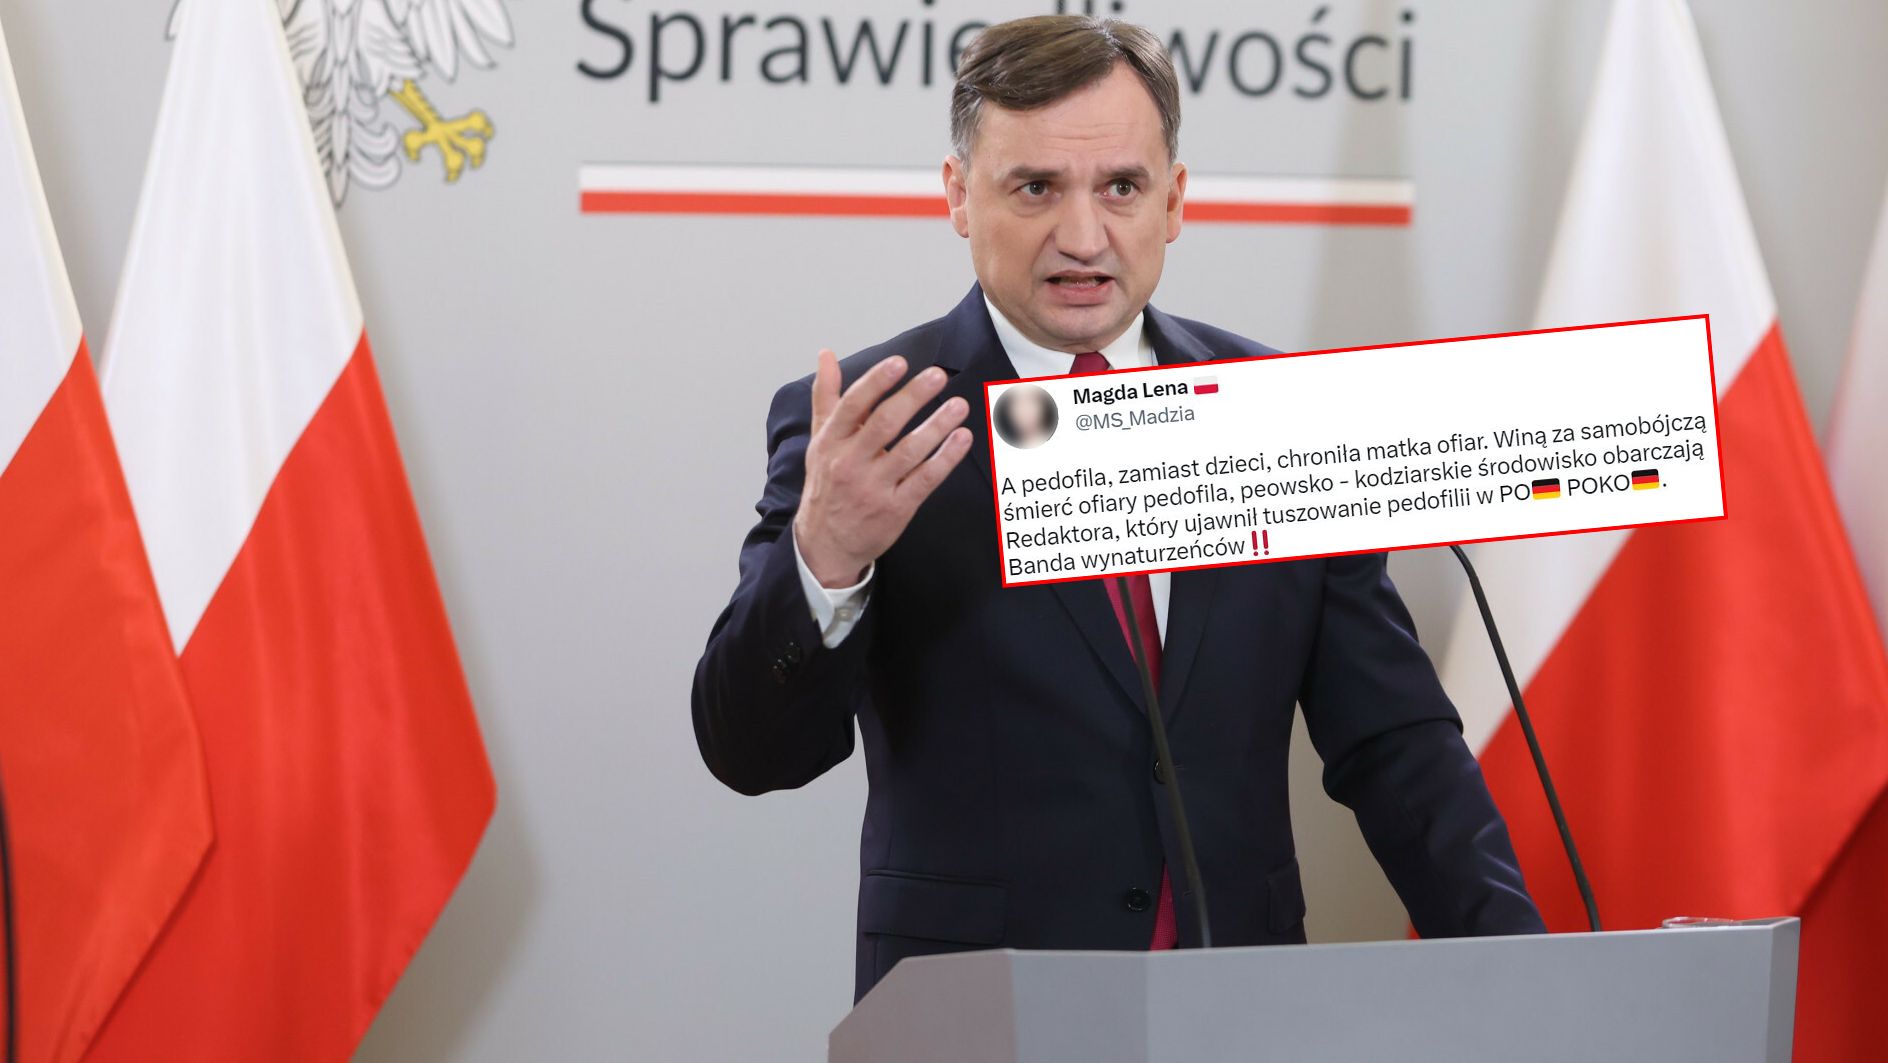 Minister Sprawiedliwości, prokurator generalny Zbigniew Ziobro i wpis konta "Ms_Madzia"